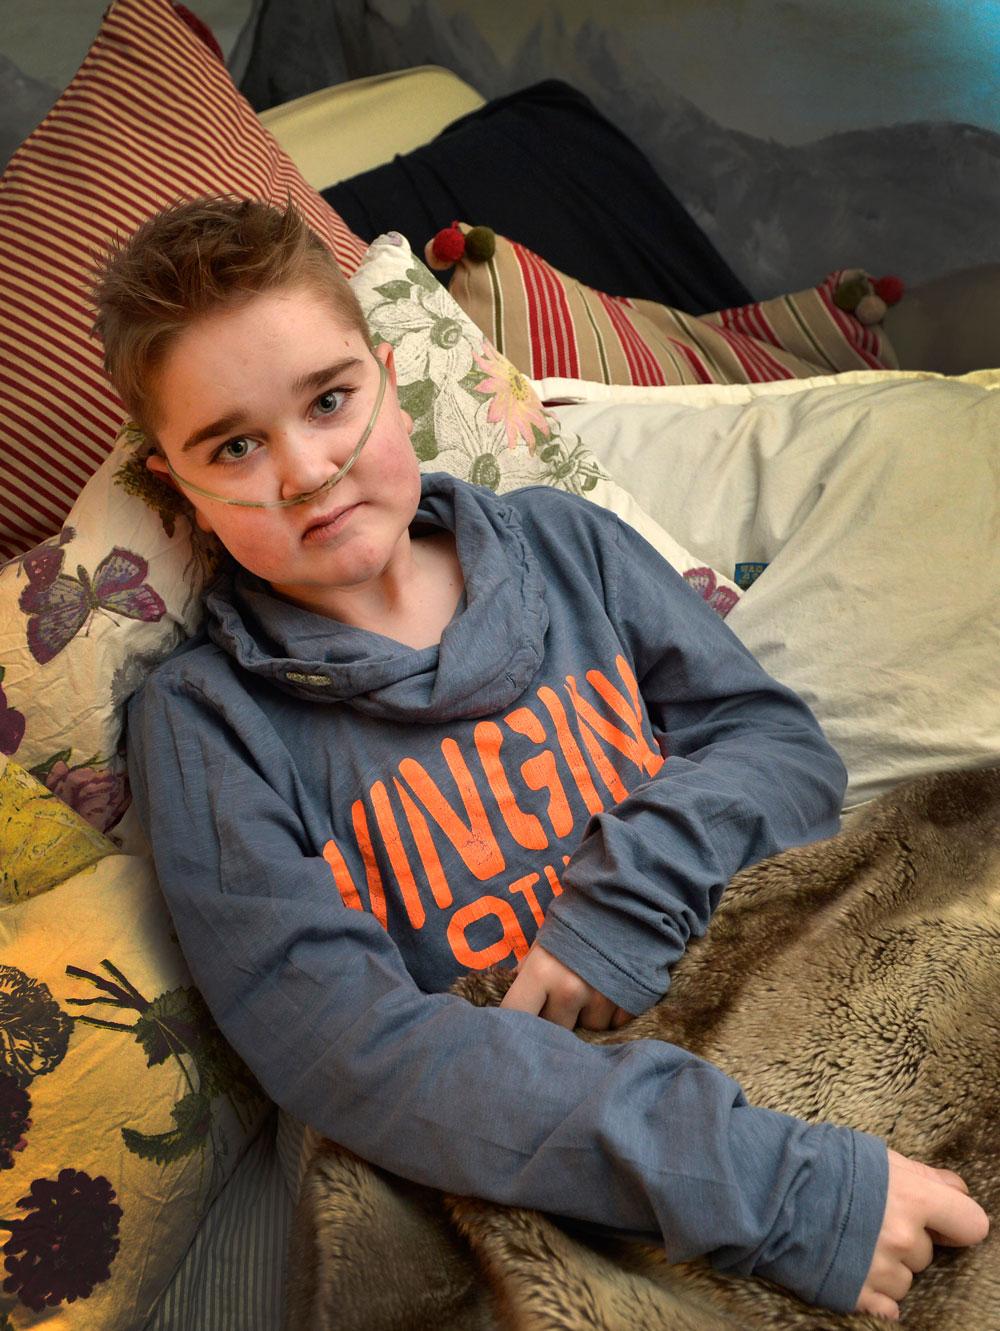 Jonathan var sex år när han drabbades av lungfibros – en sjukdom som leder till kraftigt nedsatt lungfunktion.